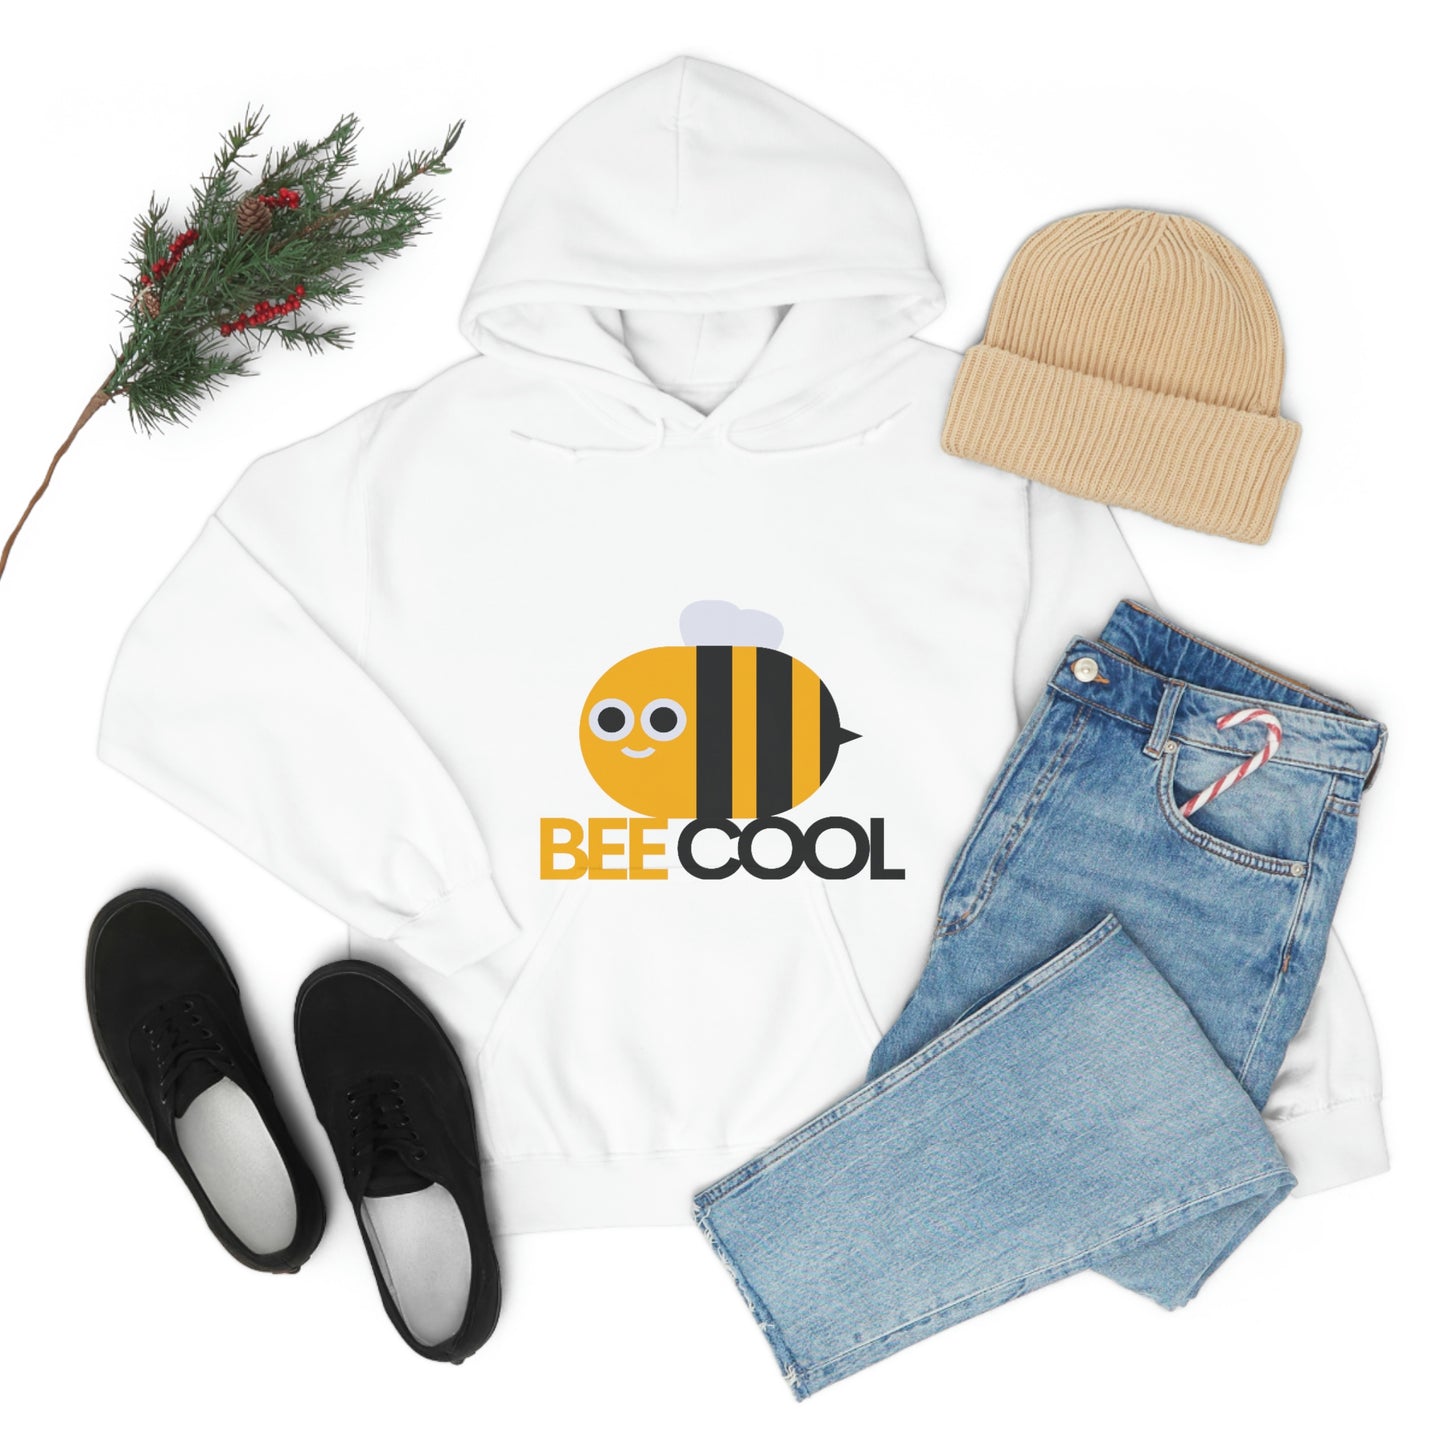 Bee Cool Unisex Hooded Sweatshirt